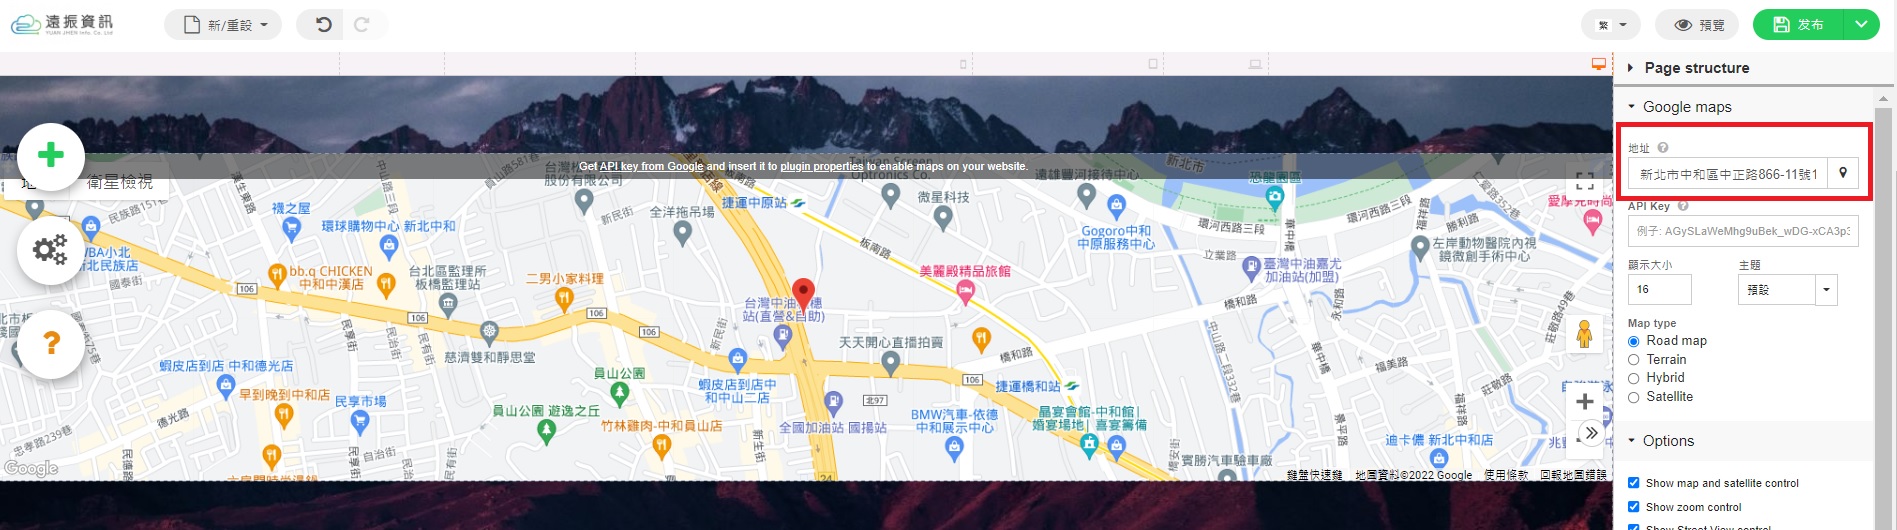 地圖 網頁設計教學-嵌入 Google Map 到網站製作中